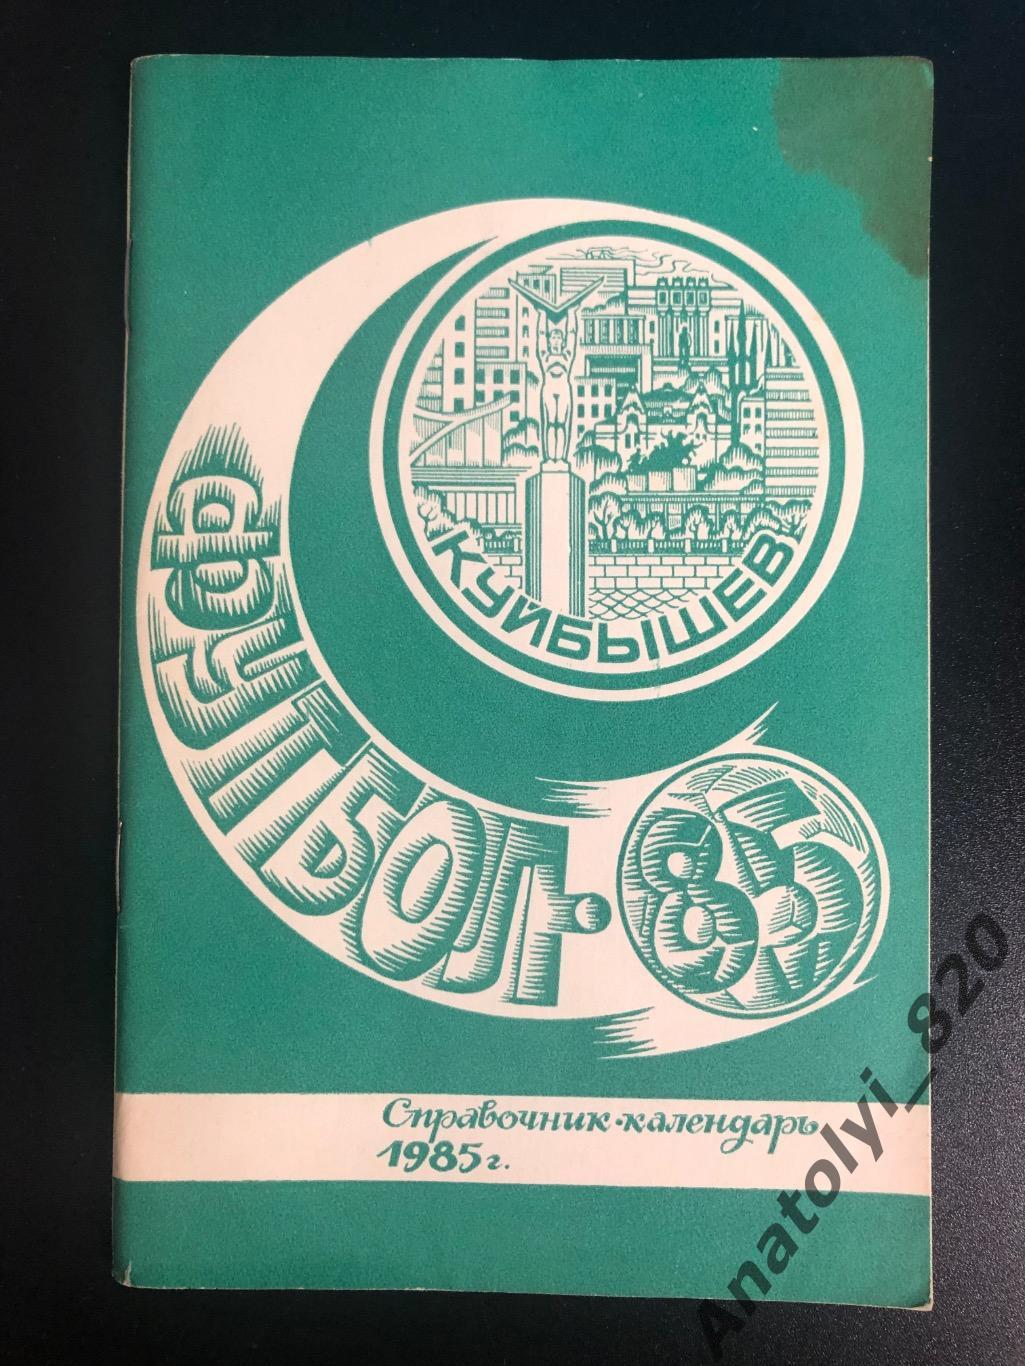 Куйбышев 1985 год календарь - справочник